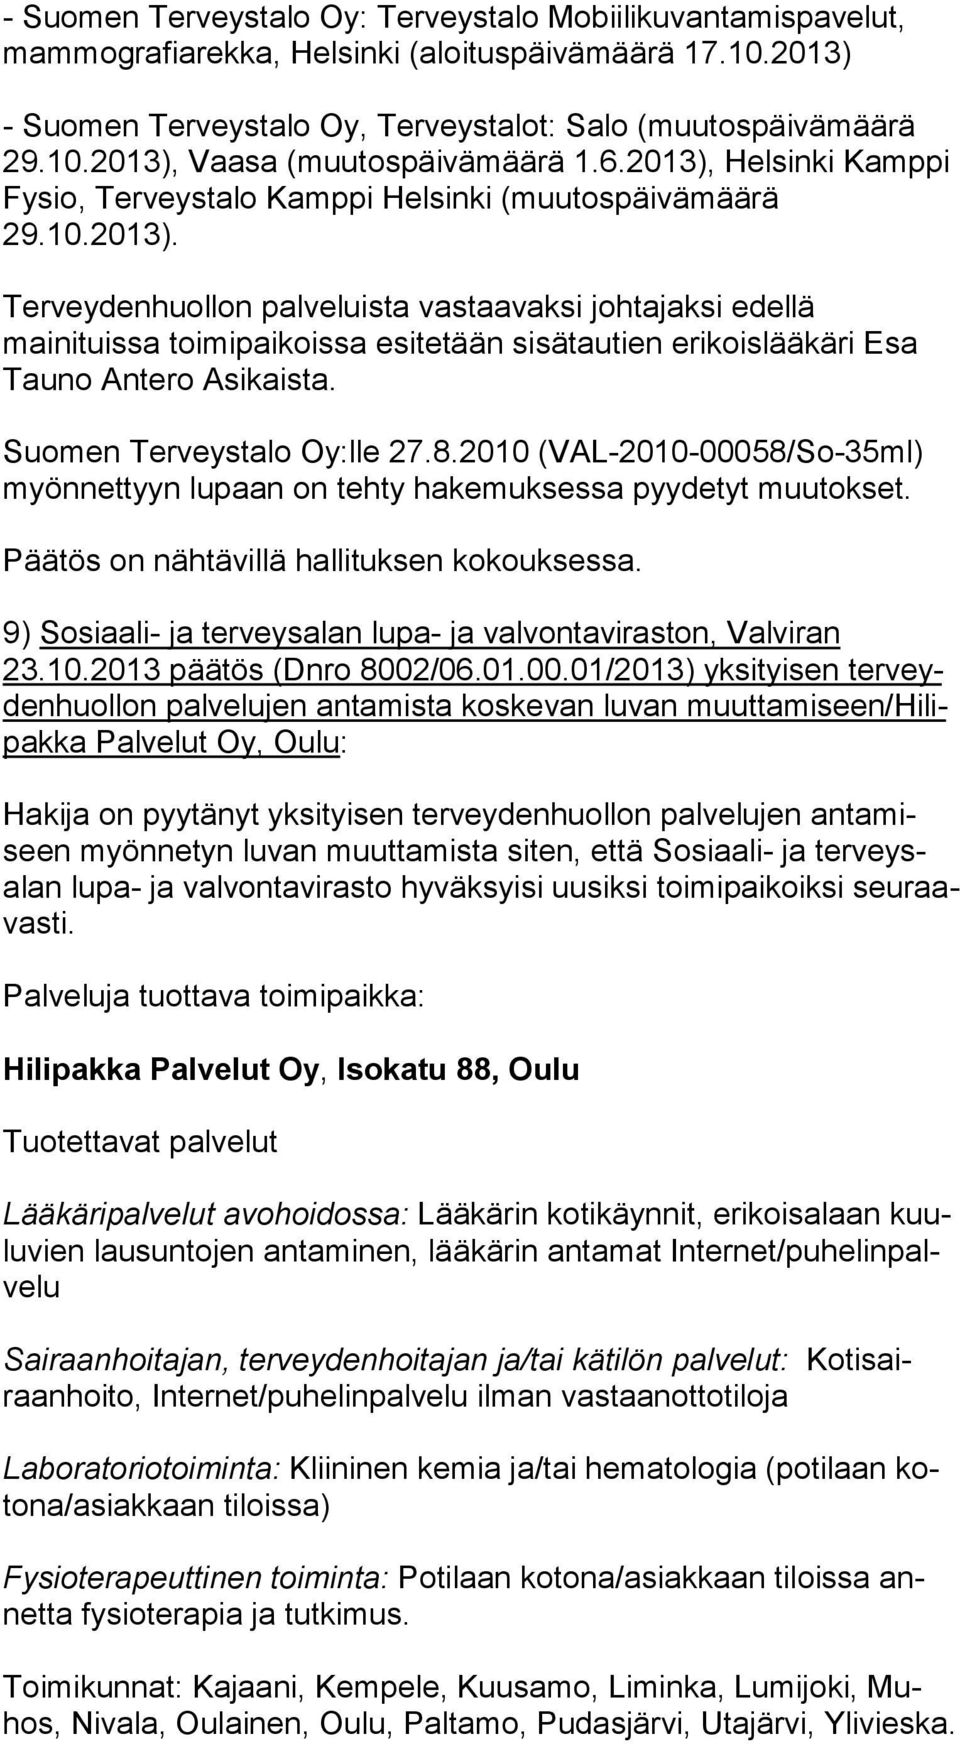 Suomen Terveystalo Oy:lle 27.8.2010 (VAL-2010-00058/So-35ml) myönnettyyn lupaan on tehty hakemuksessa pyydetyt muutokset. 9) Sosiaali- ja terveysalan lupa- ja valvontaviraston, Valviran 23.10.2013 päätös (Dnro 8002/06.